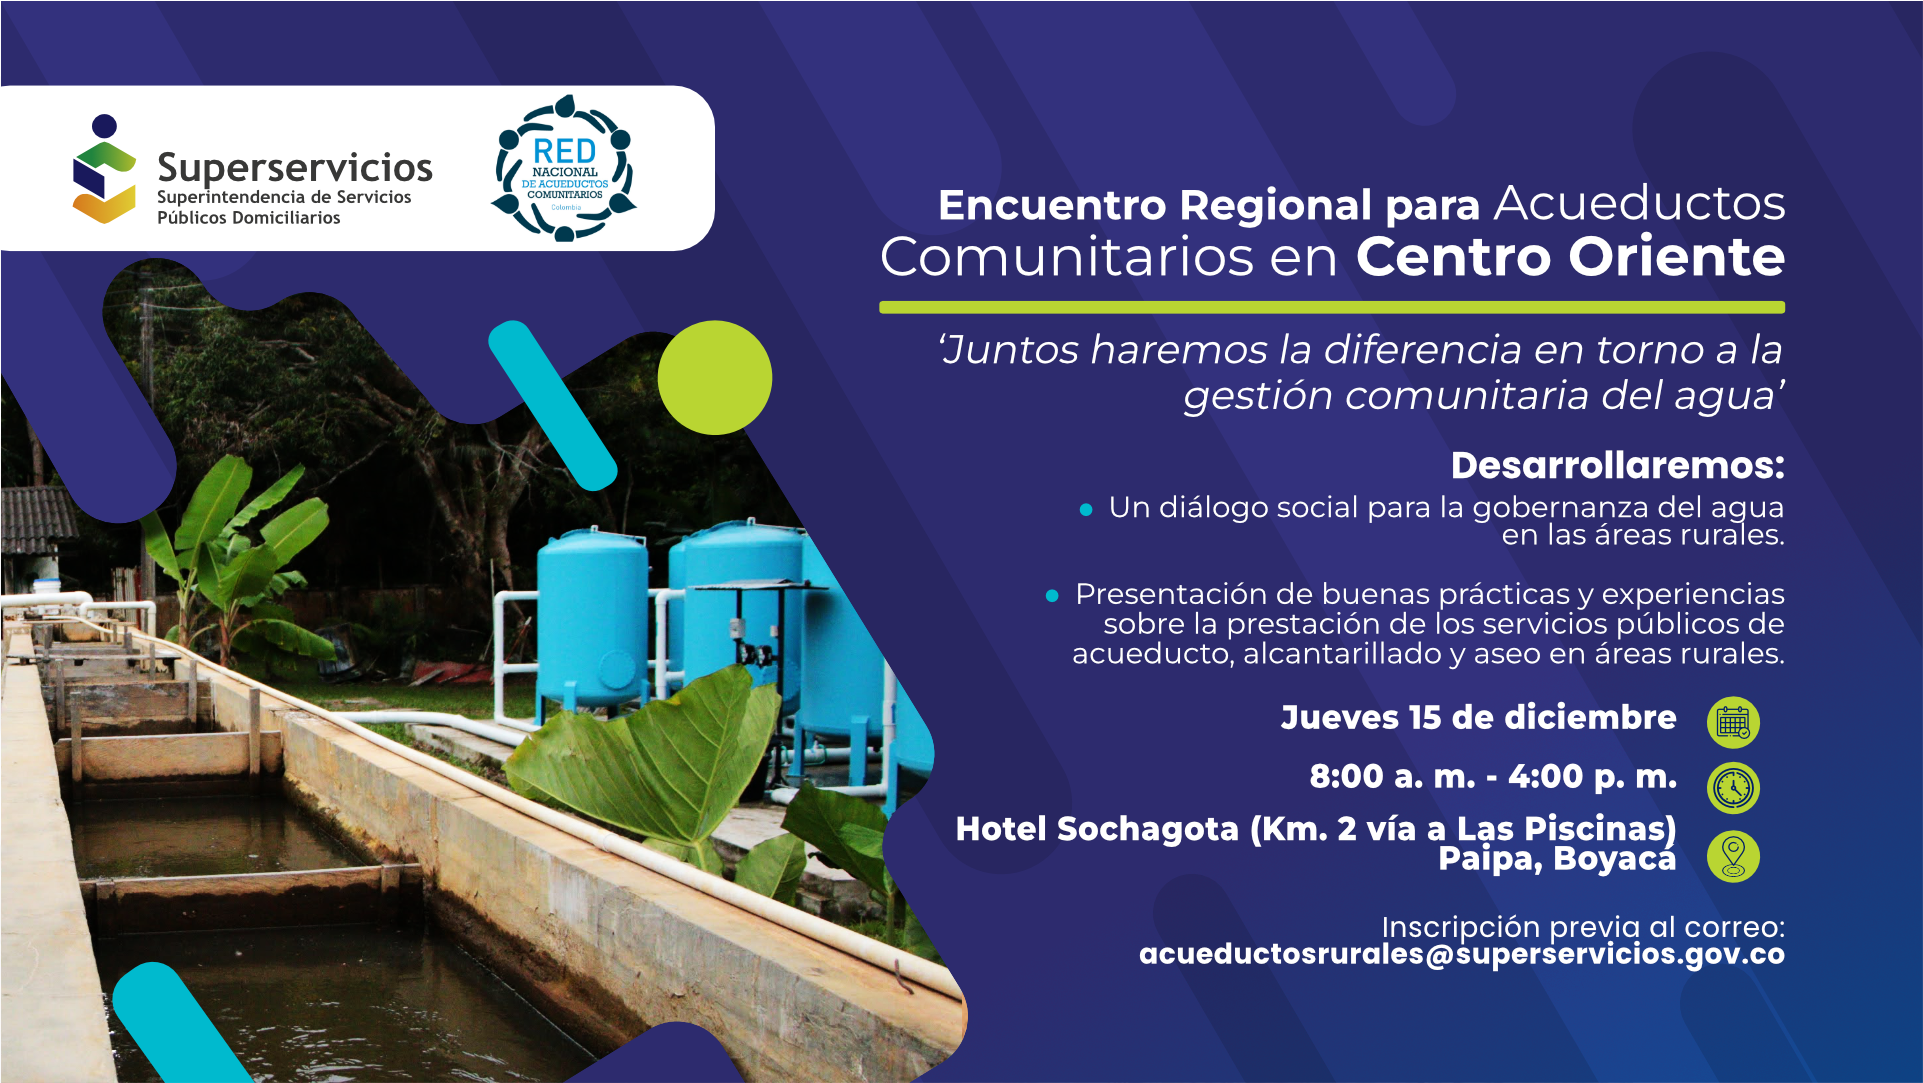 Encuentro Regional para Acueductos Comunitarios en Centro Oriente, en Paipa, Boyacá
